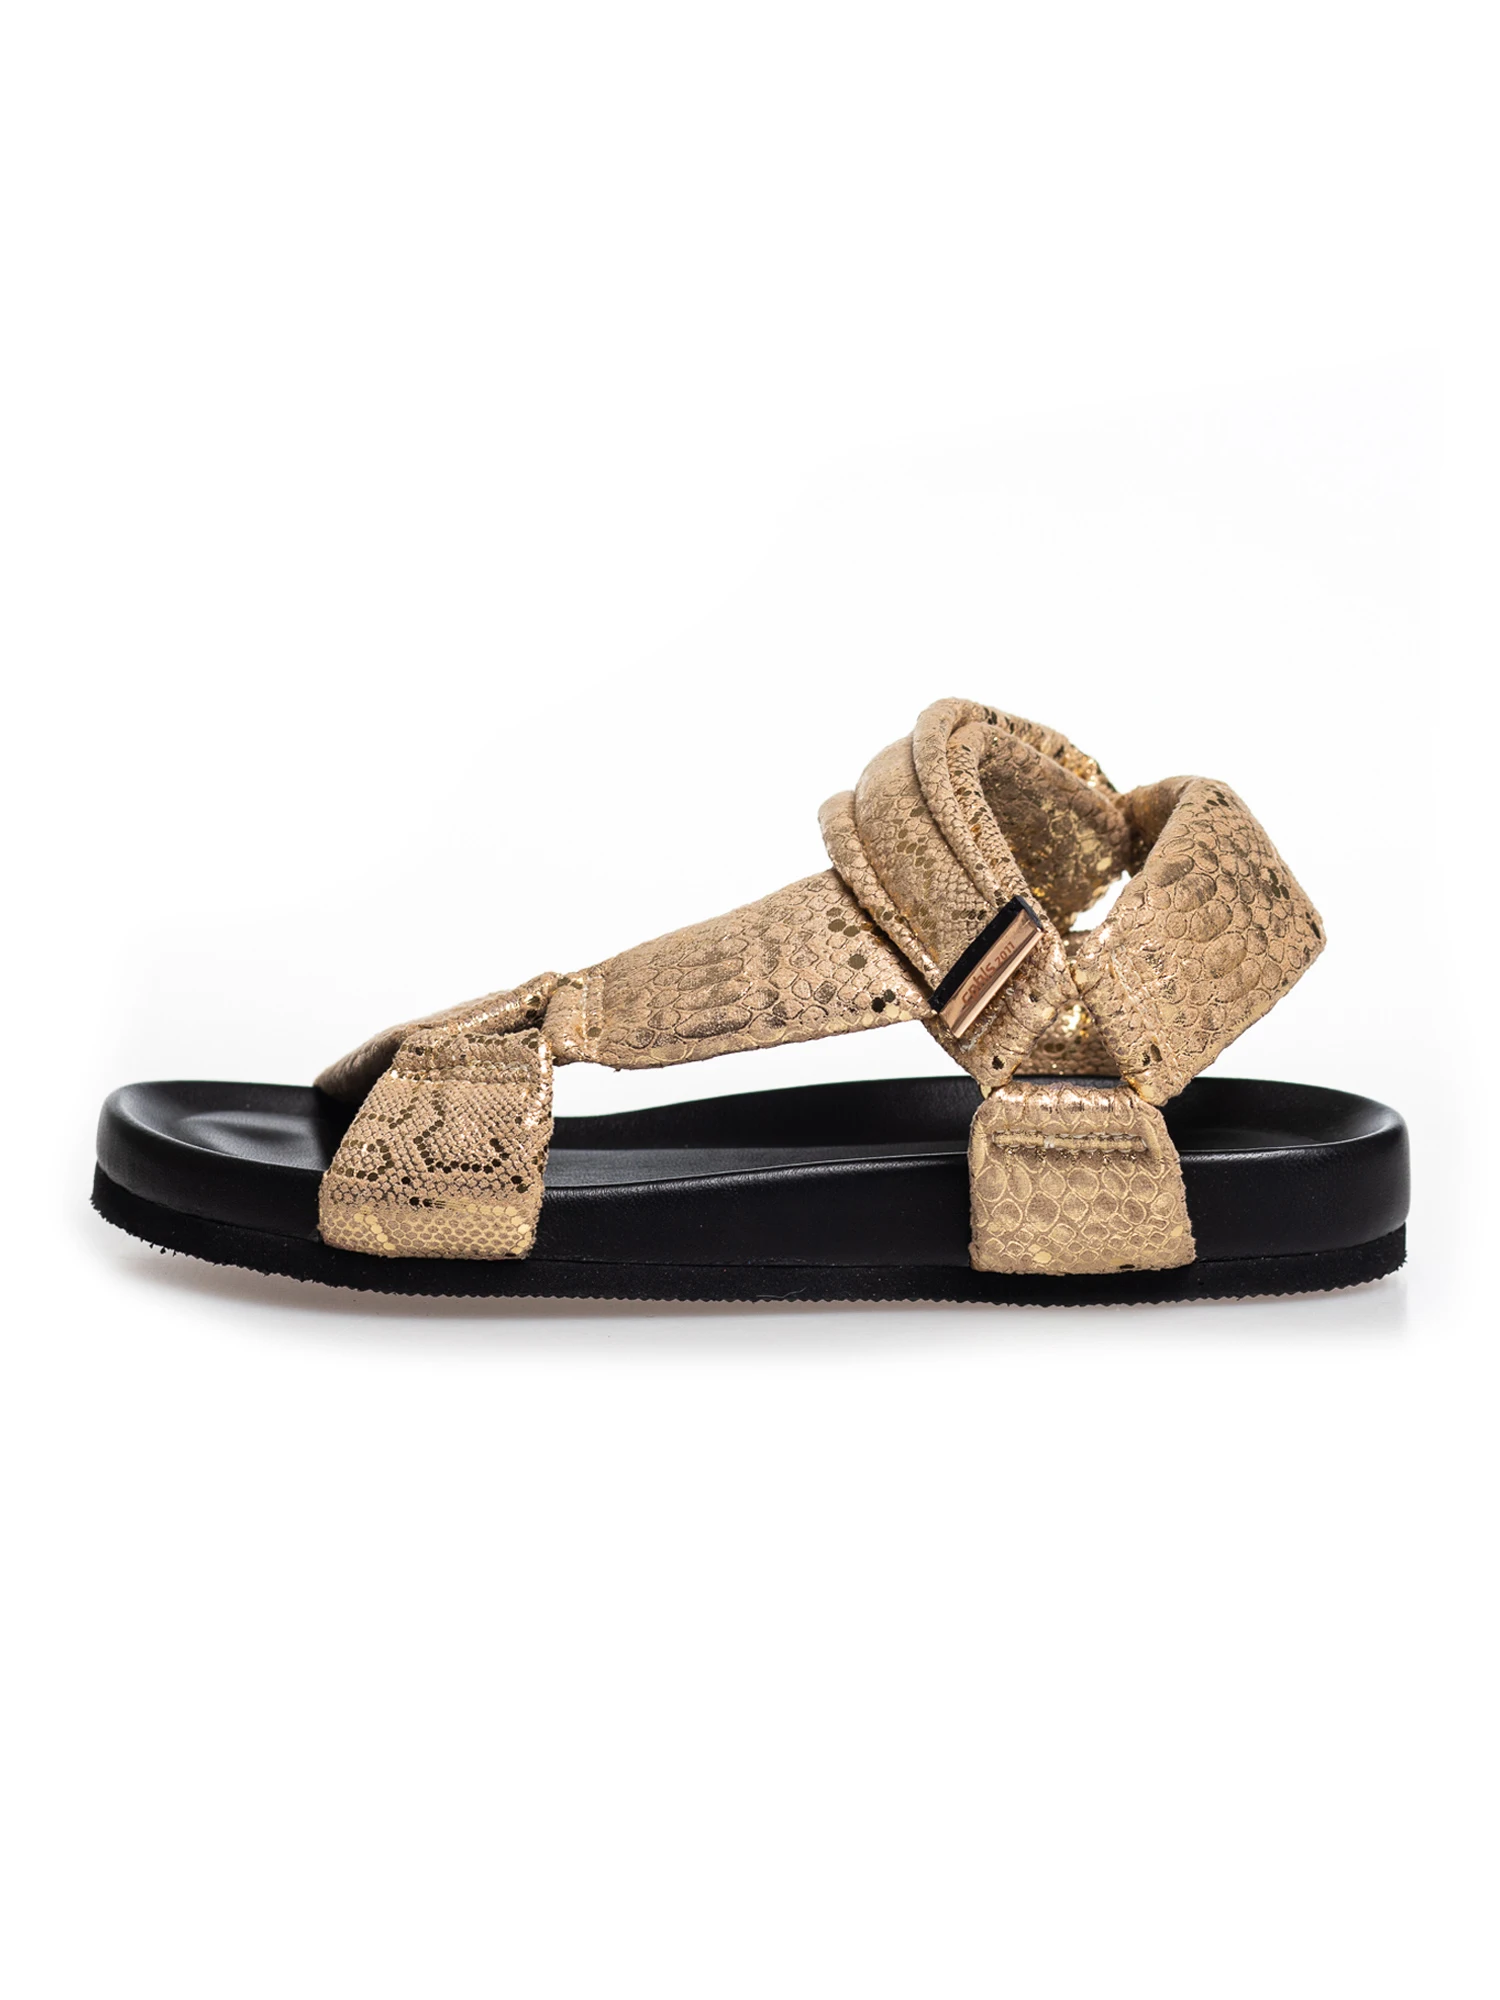 Manager Squeak Derfra Copenhagen Shoes Carrie Moon Sandal | Køb smukke sandaler online